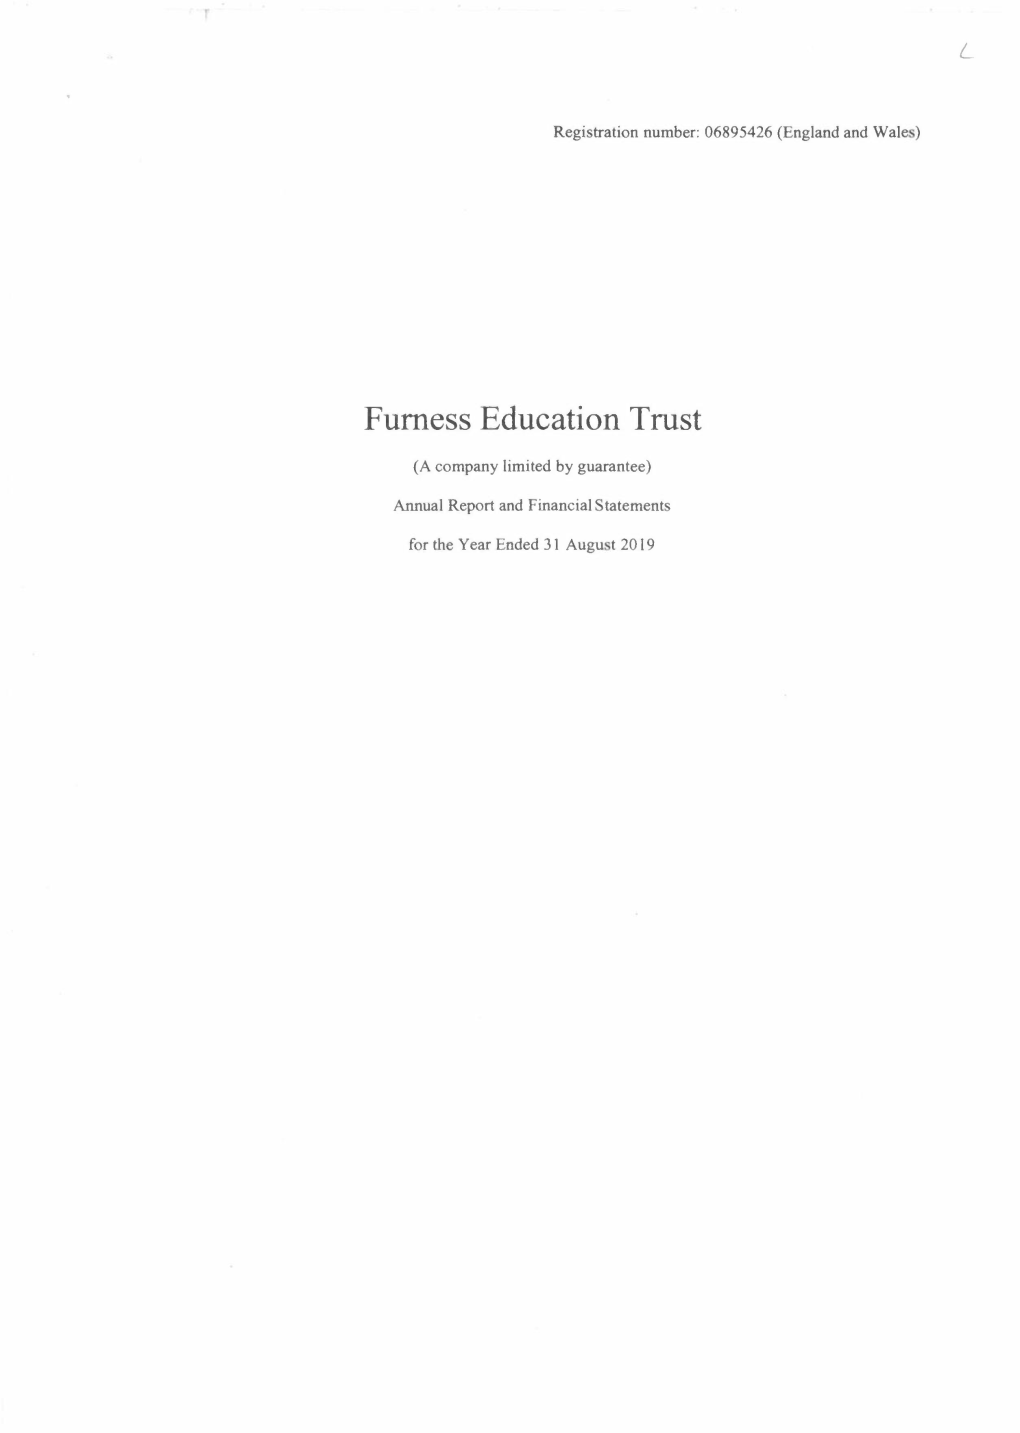 Furness Education Trust Financial Statements